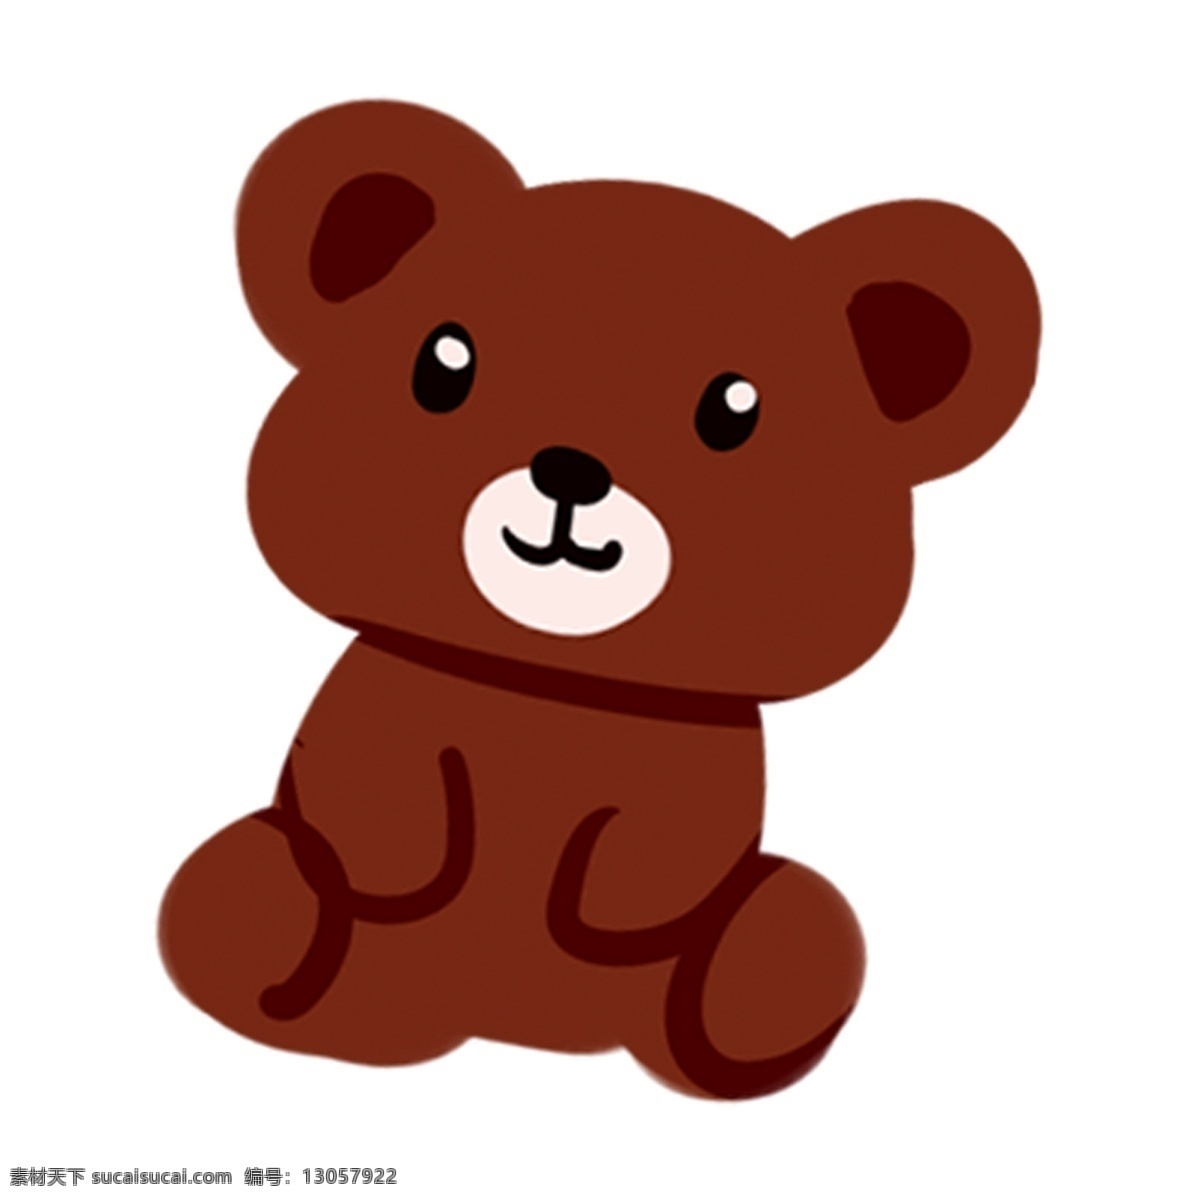 棕色 手绘 玩具 熊 透明 玩具熊 装饰元素 插画元素 免扣素材 简约风